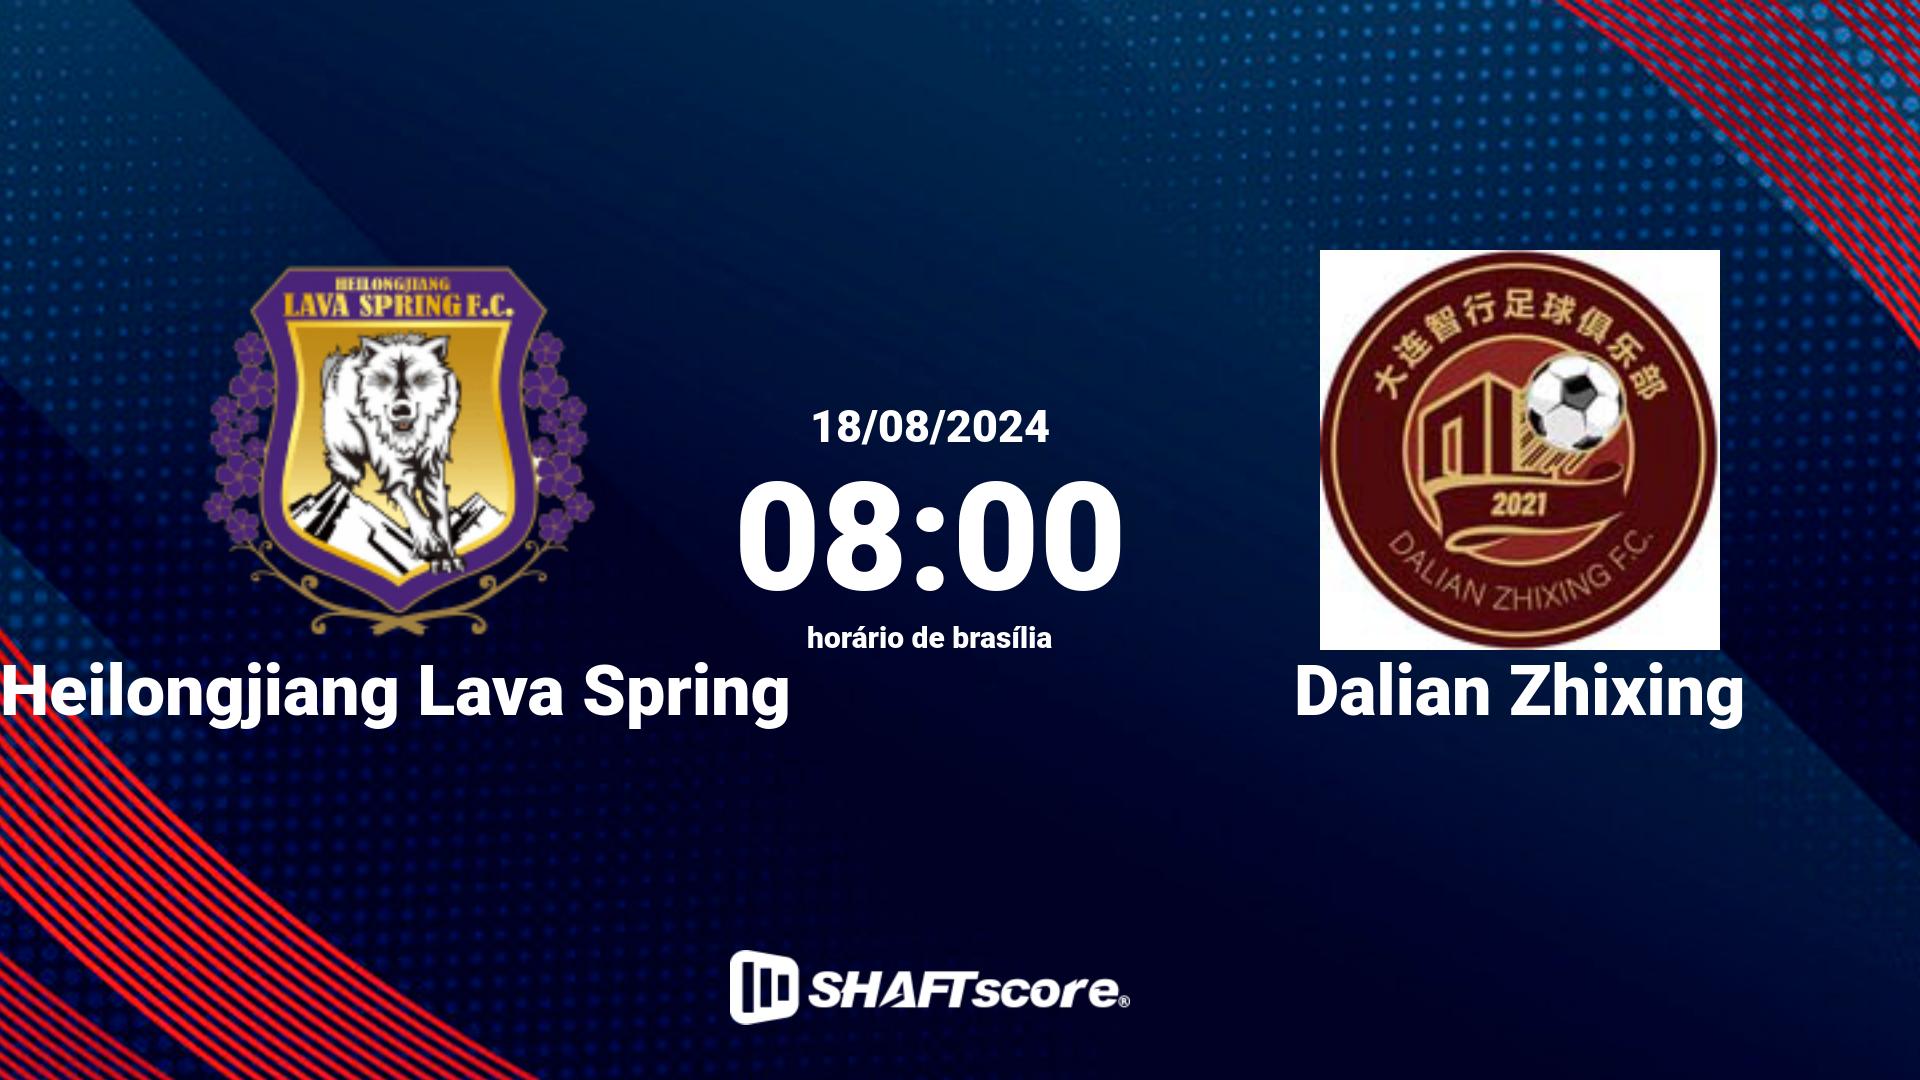 Estatísticas do jogo Heilongjiang Lava Spring vs Dalian Zhixing 18.08 08:00